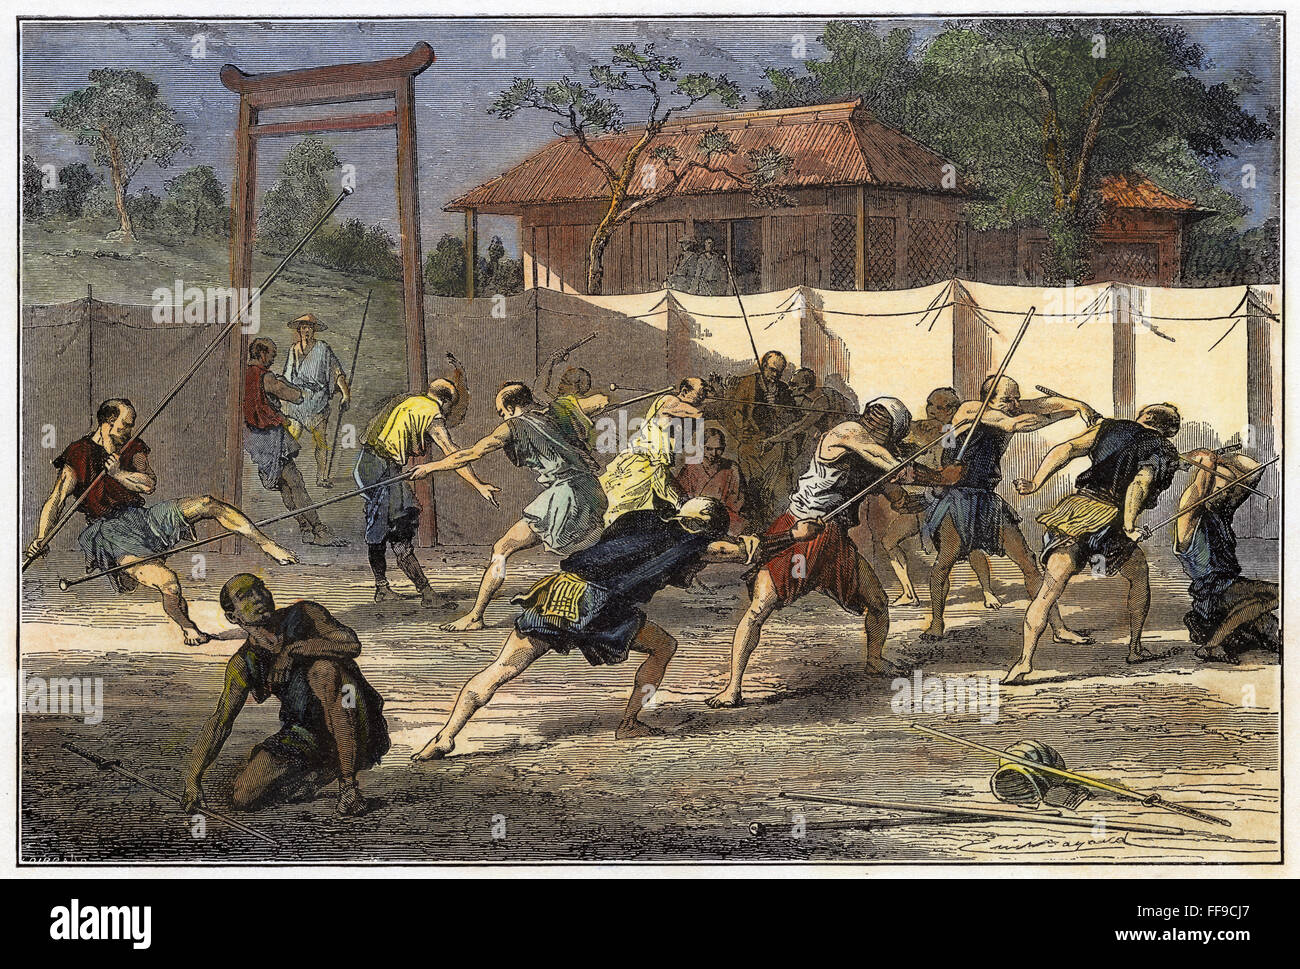 SAMURAI TRAINING, 1900. /nYoung Samurai in Japan Training für die Satsuma-Rebellion von 1877. Holzstich, American, 1900. Stockfoto